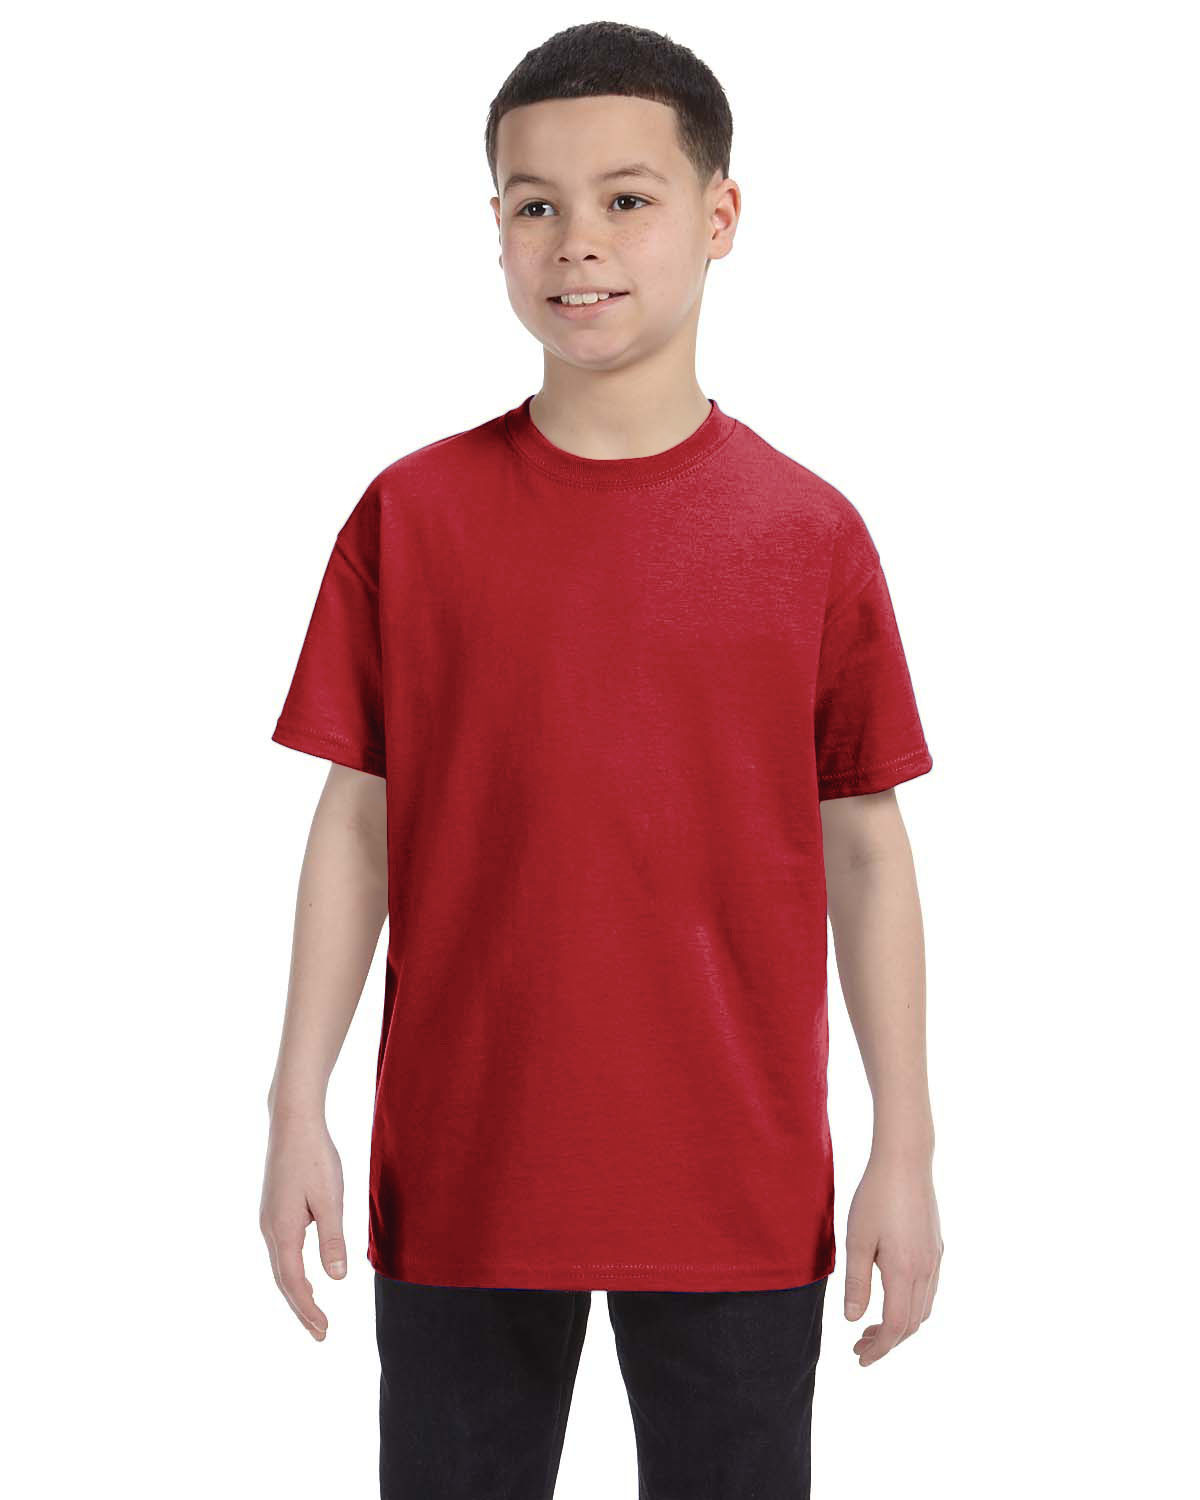 BVM Kids T-Shirt